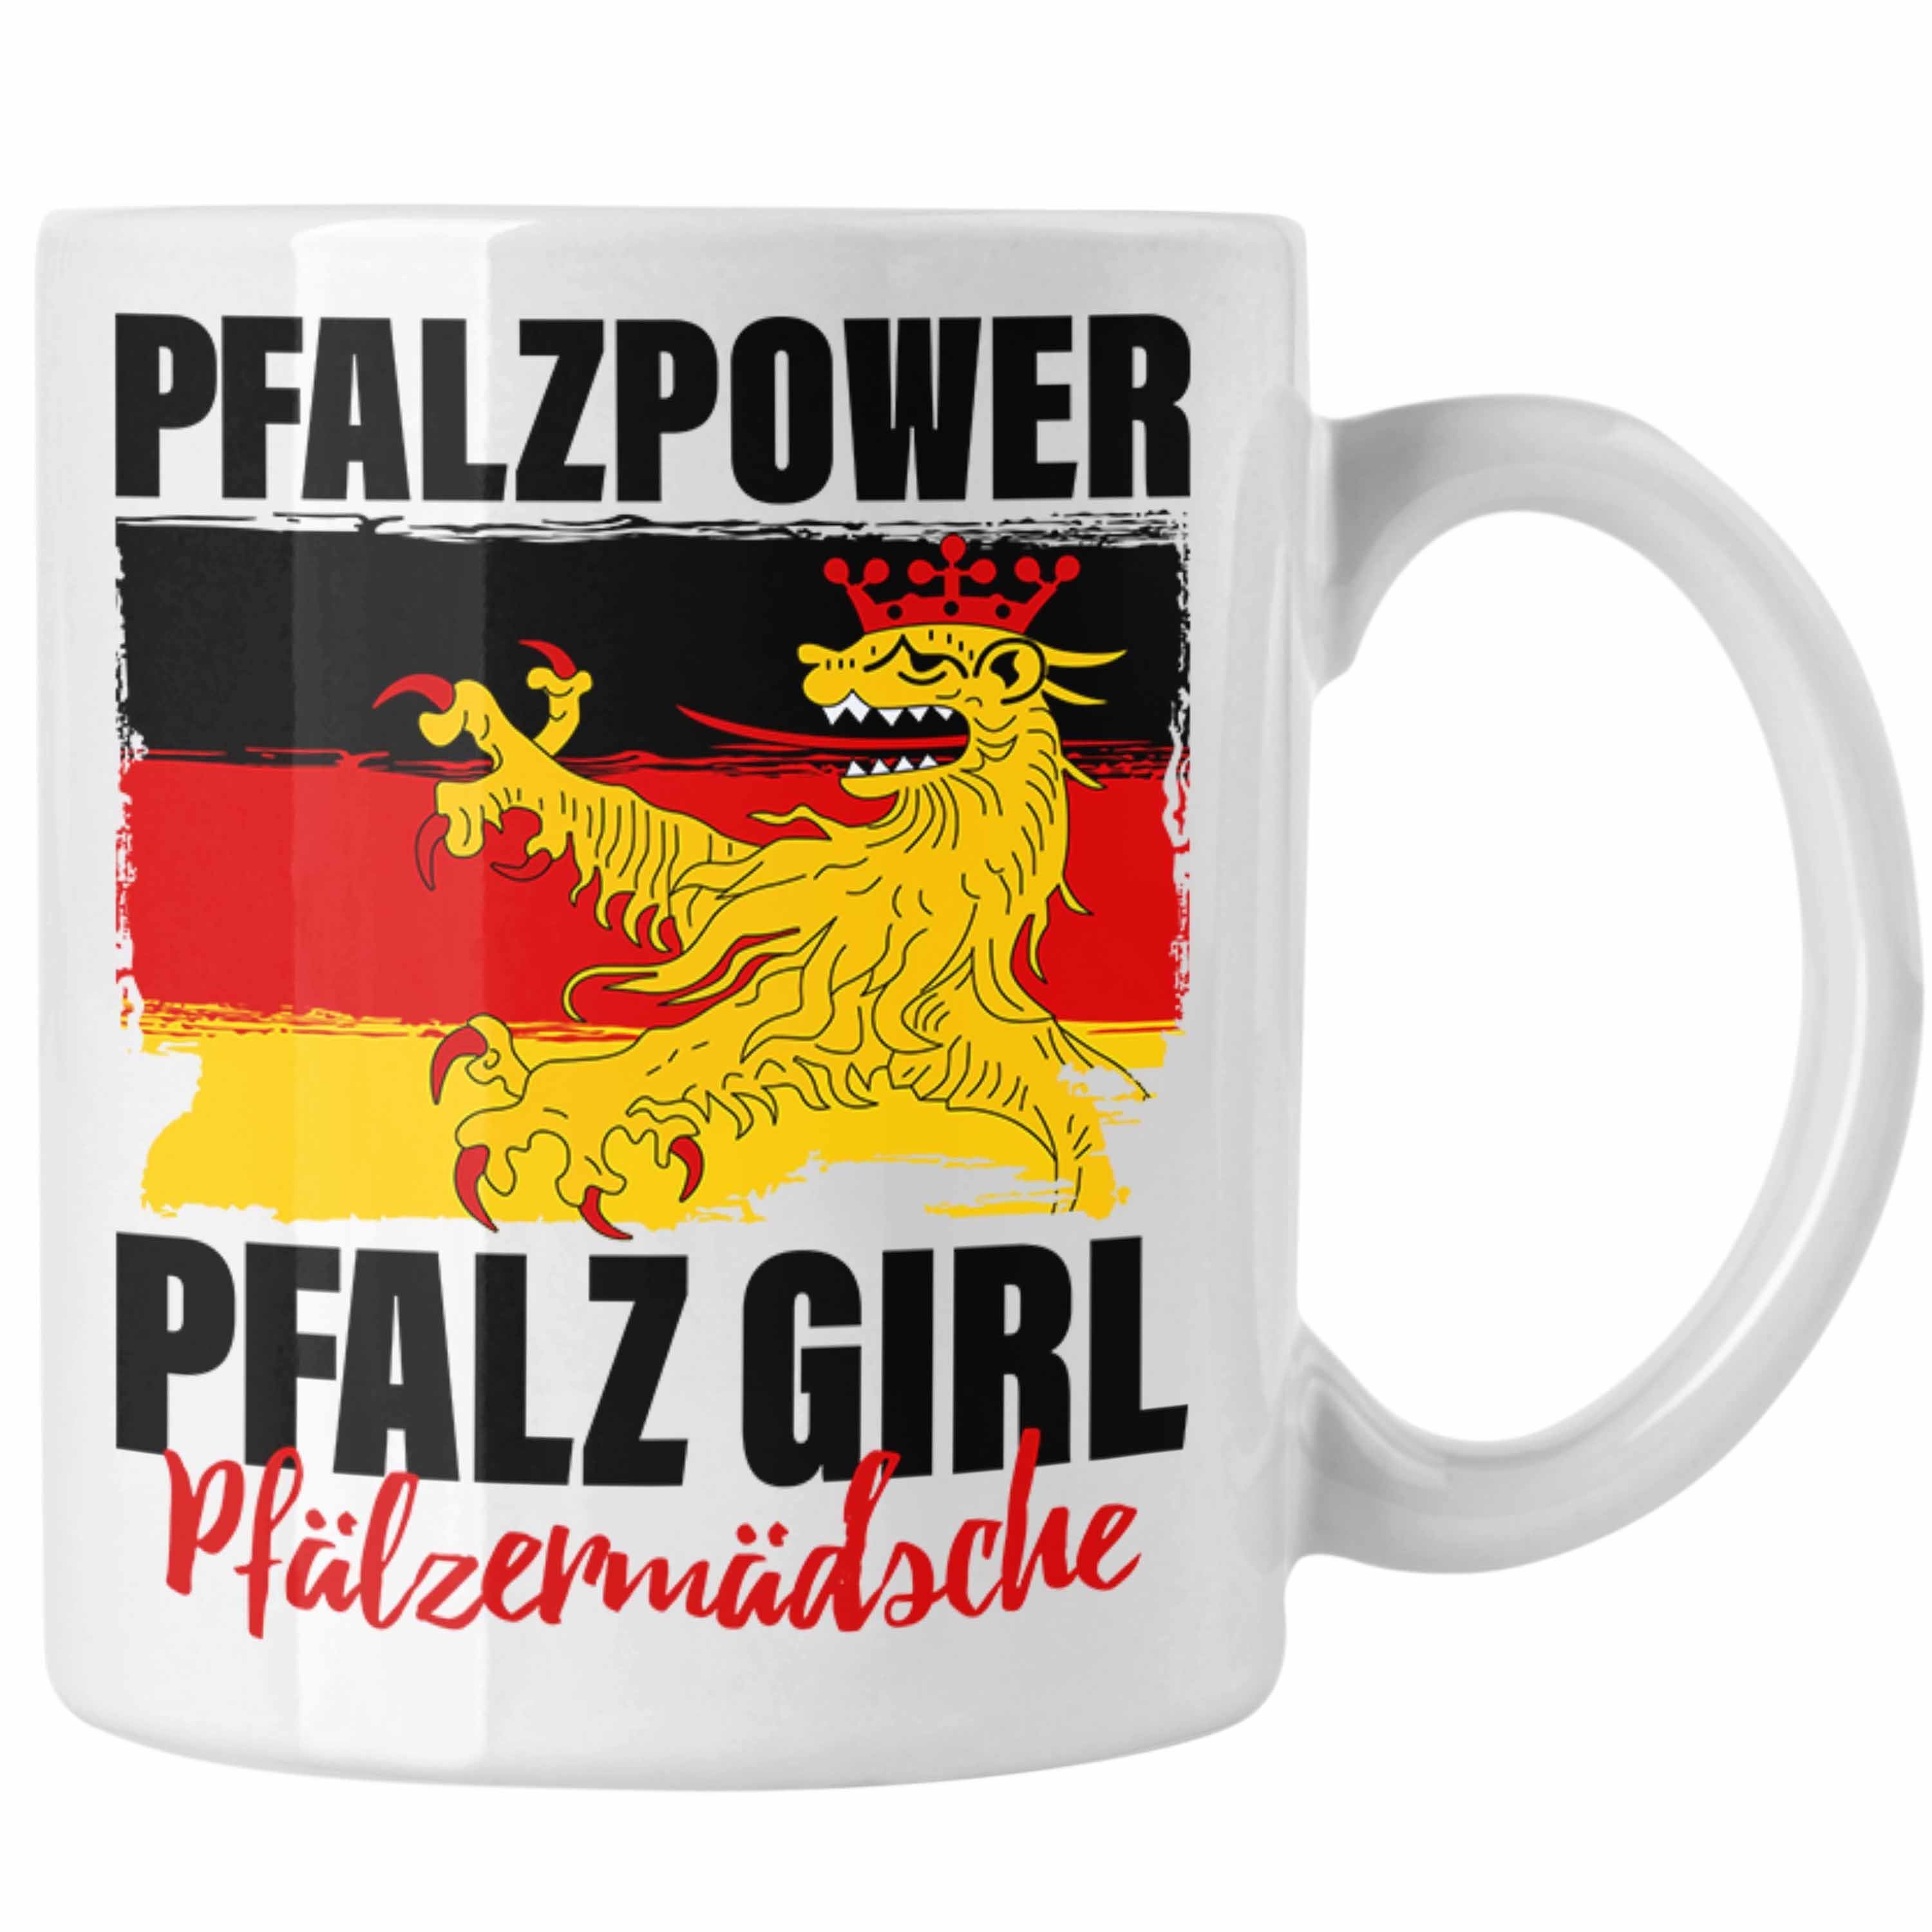 Trendation Tasse Pfalzpower Tasse Geschenk Frauen Pfalz Girl Pfalzmädsche Weiss